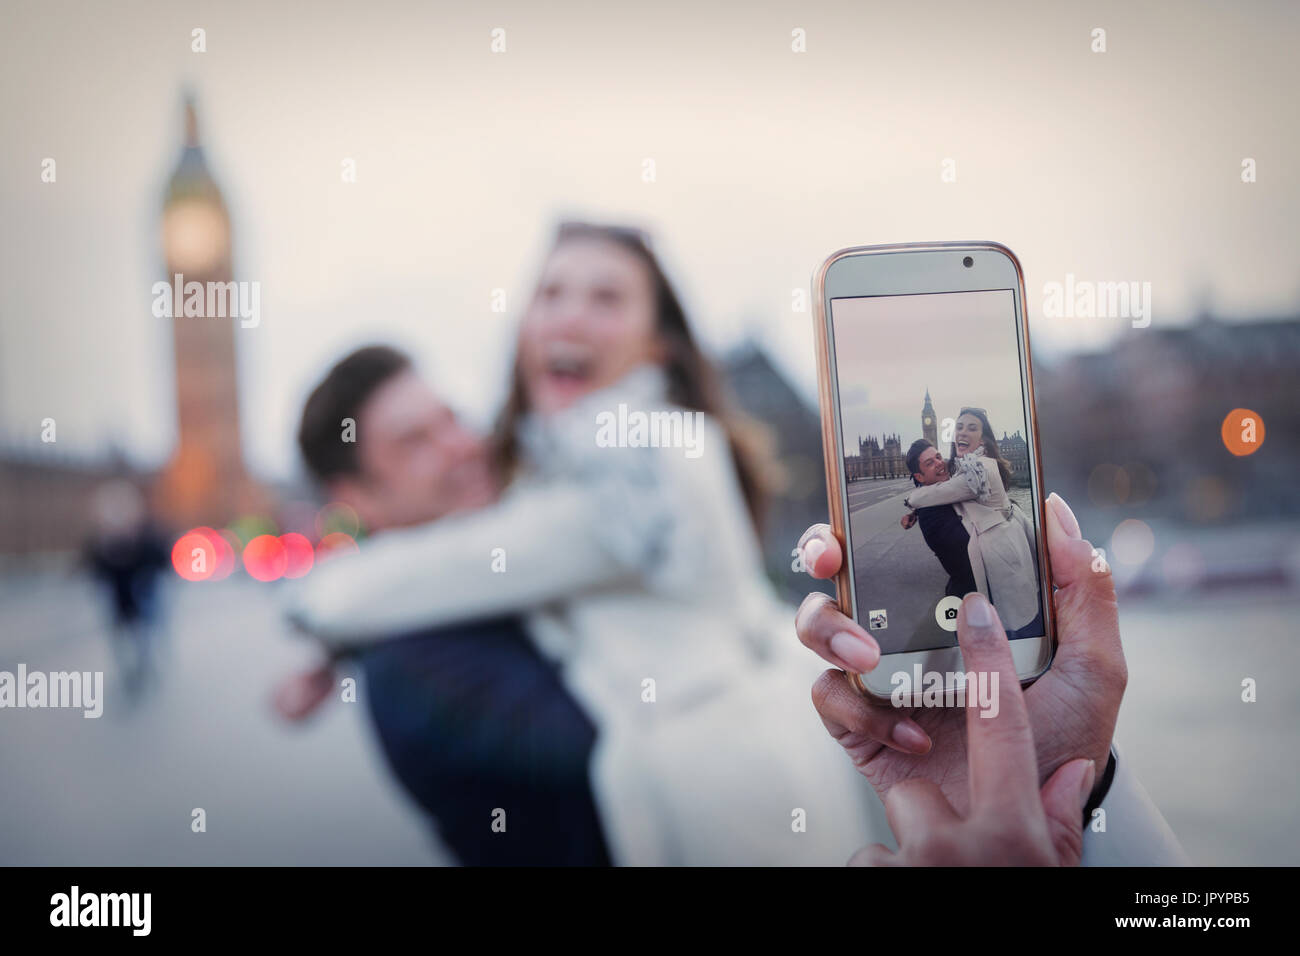 Persönlichen Perspektive, verspielte Paar umarmt und fotografiert mit Kamera-Handy in der Nähe von Big Ben, London, UK Stockfoto